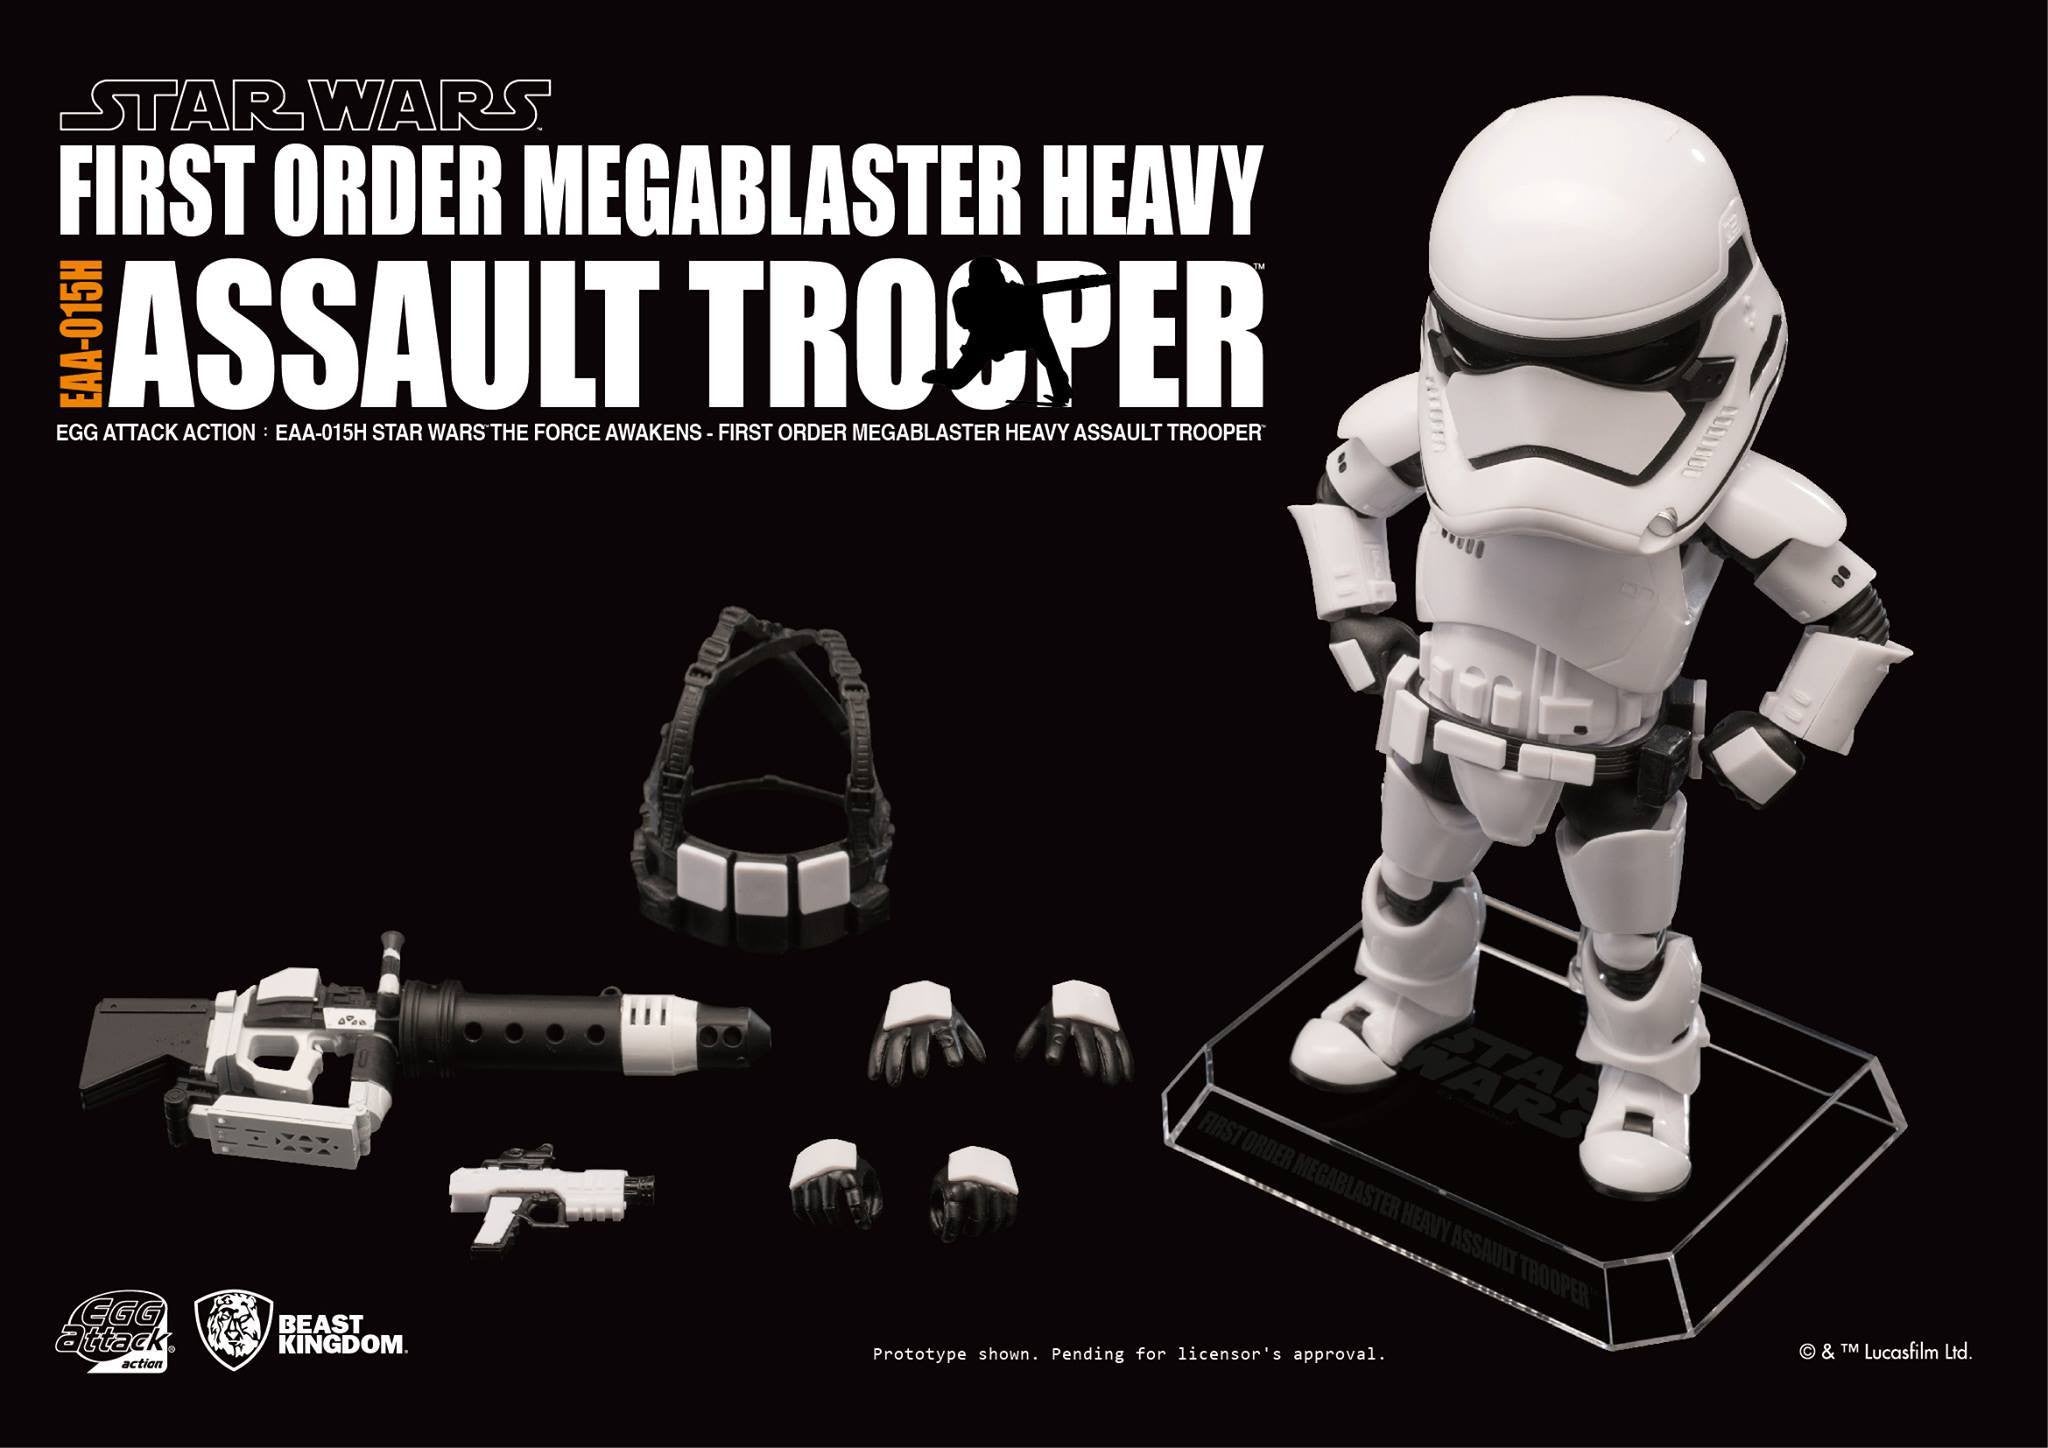 Egg Attack Action - EAA-015H - Star Wars: The Force Awakens - Megablaster Heavy Assault Trooper - Marvelous Toys